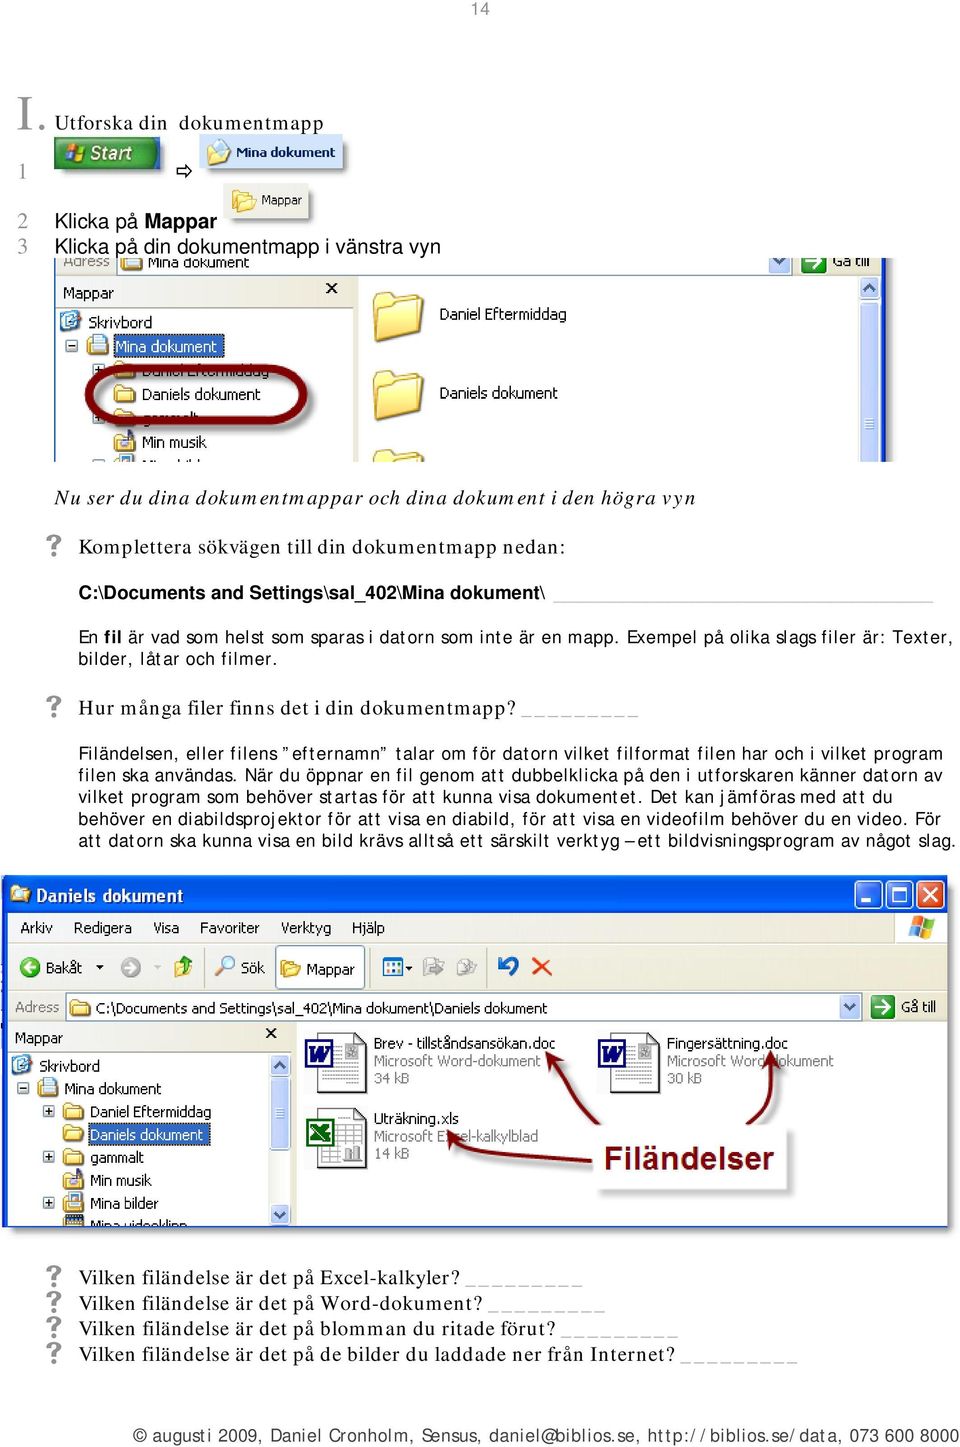 Hur många filer finns det i din dokumentmapp? Filändelsen, eller filens efternamn talar om för datorn vilket filformat filen har och i vilket program filen ska användas.